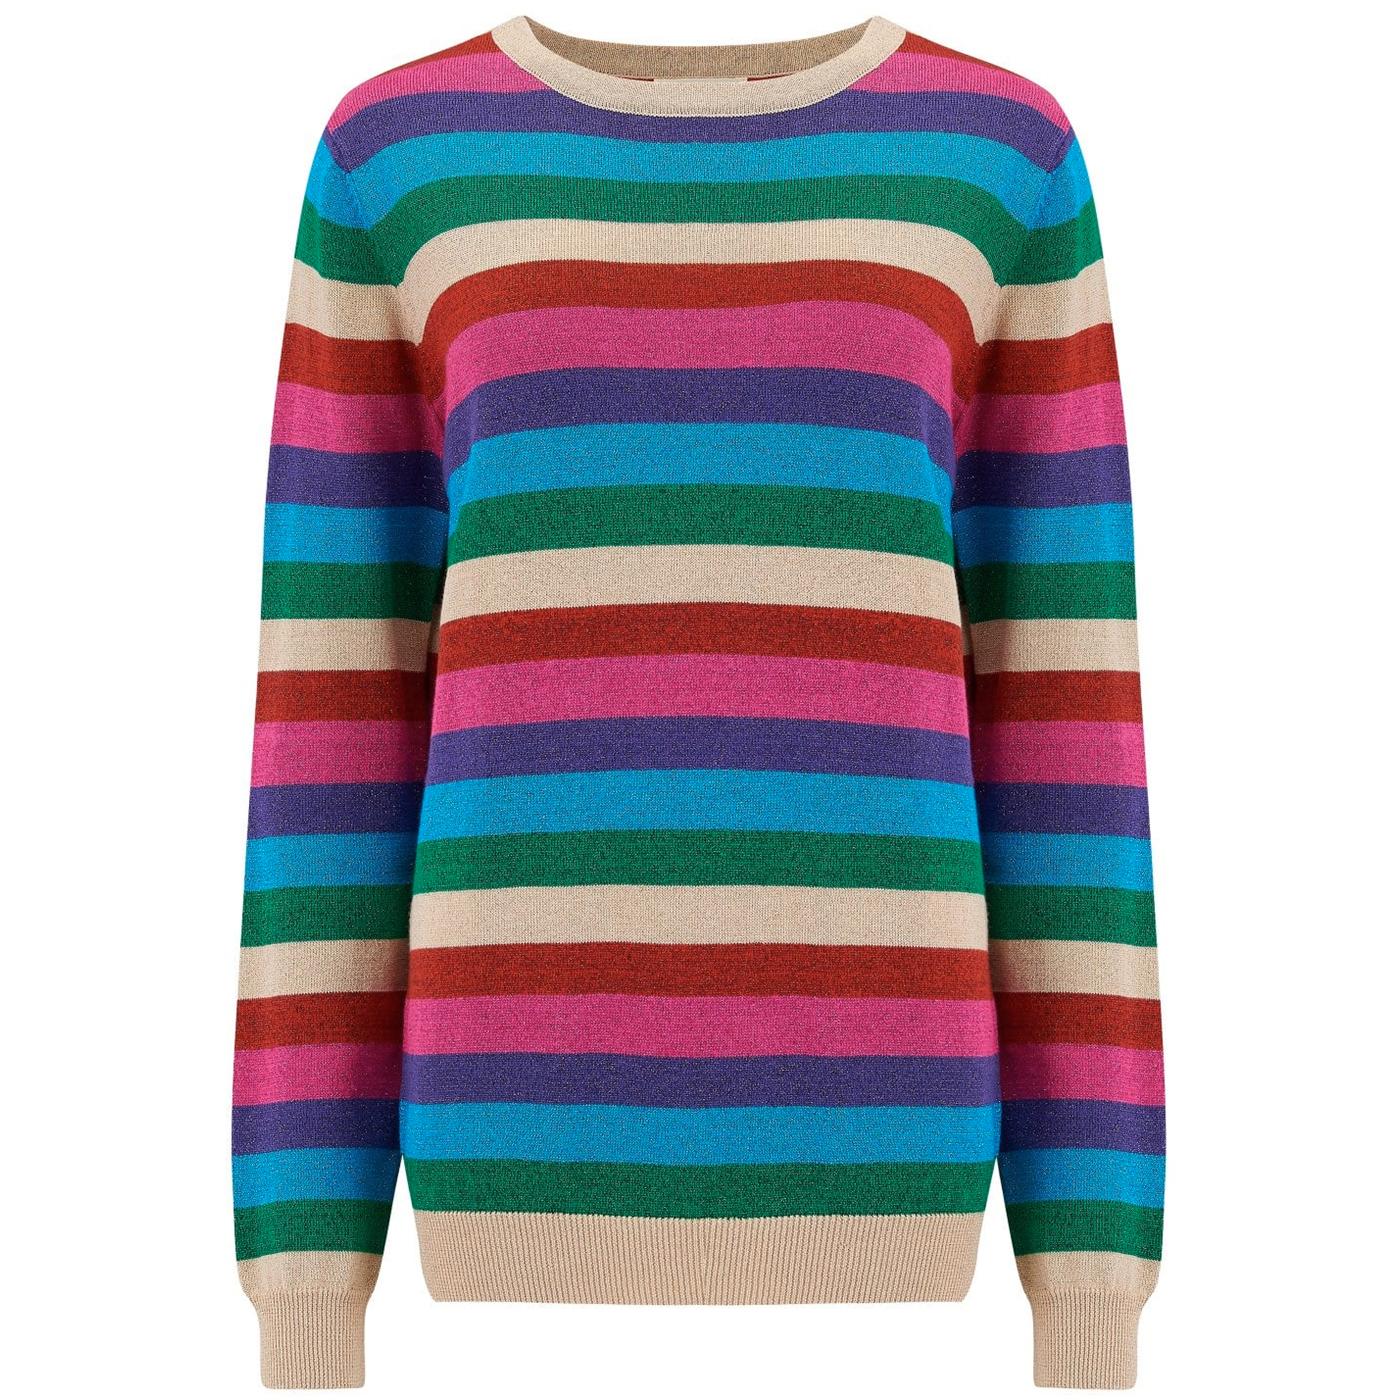 Alex SUGARHILL BRIGHTON 80s Rainbow Lurex Sweater